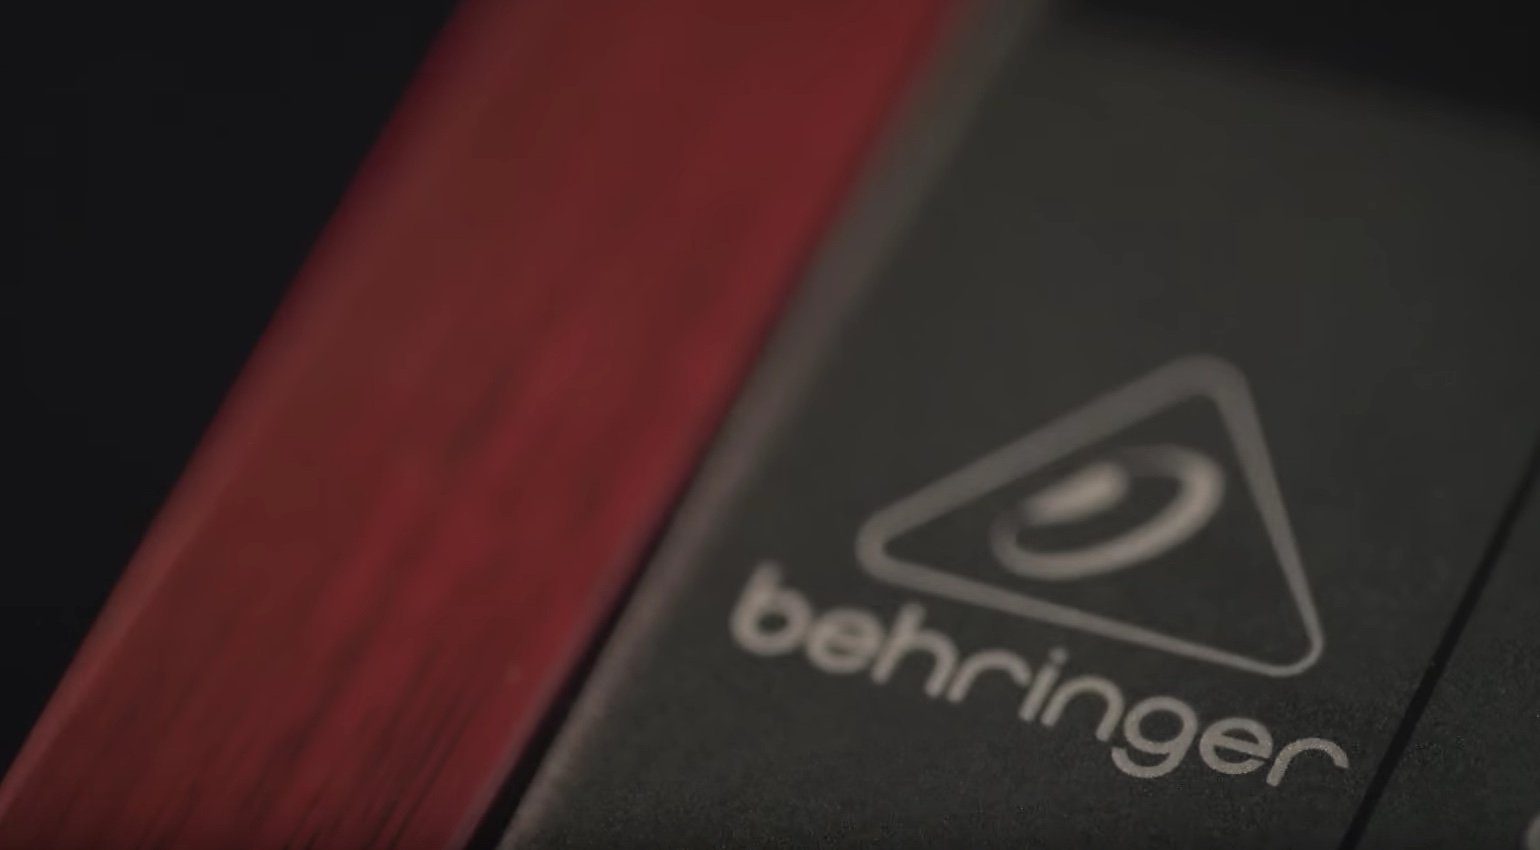 Behringer-Analog-Synthesizer-Schnappschuss-Teaser-Logo-7.jpg